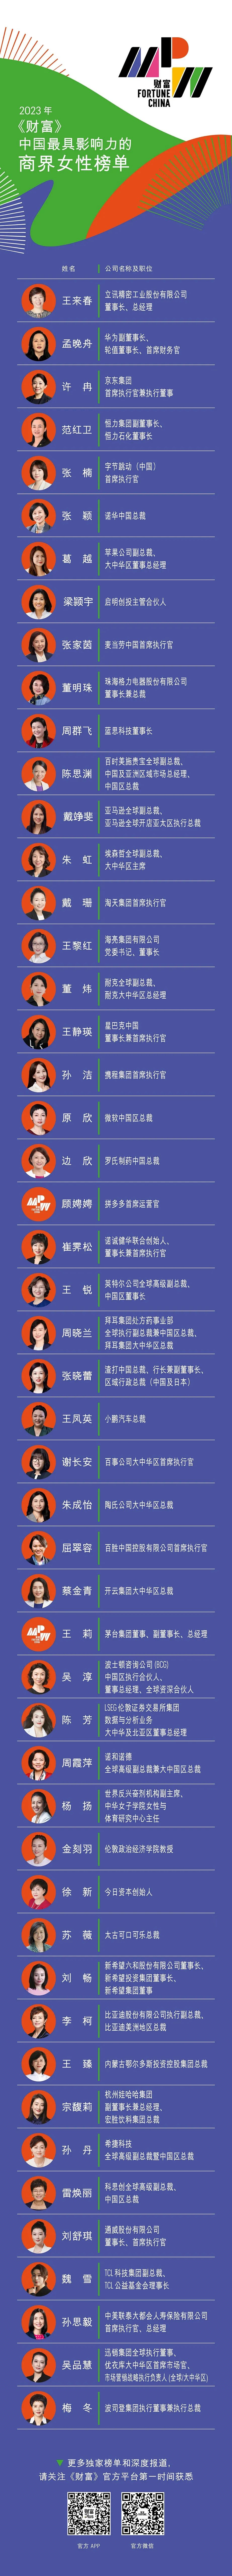 《财富》2023中国最具影响力的商界女性榜 立讯精密董事长王来春登榜首 潮商资讯 图1张